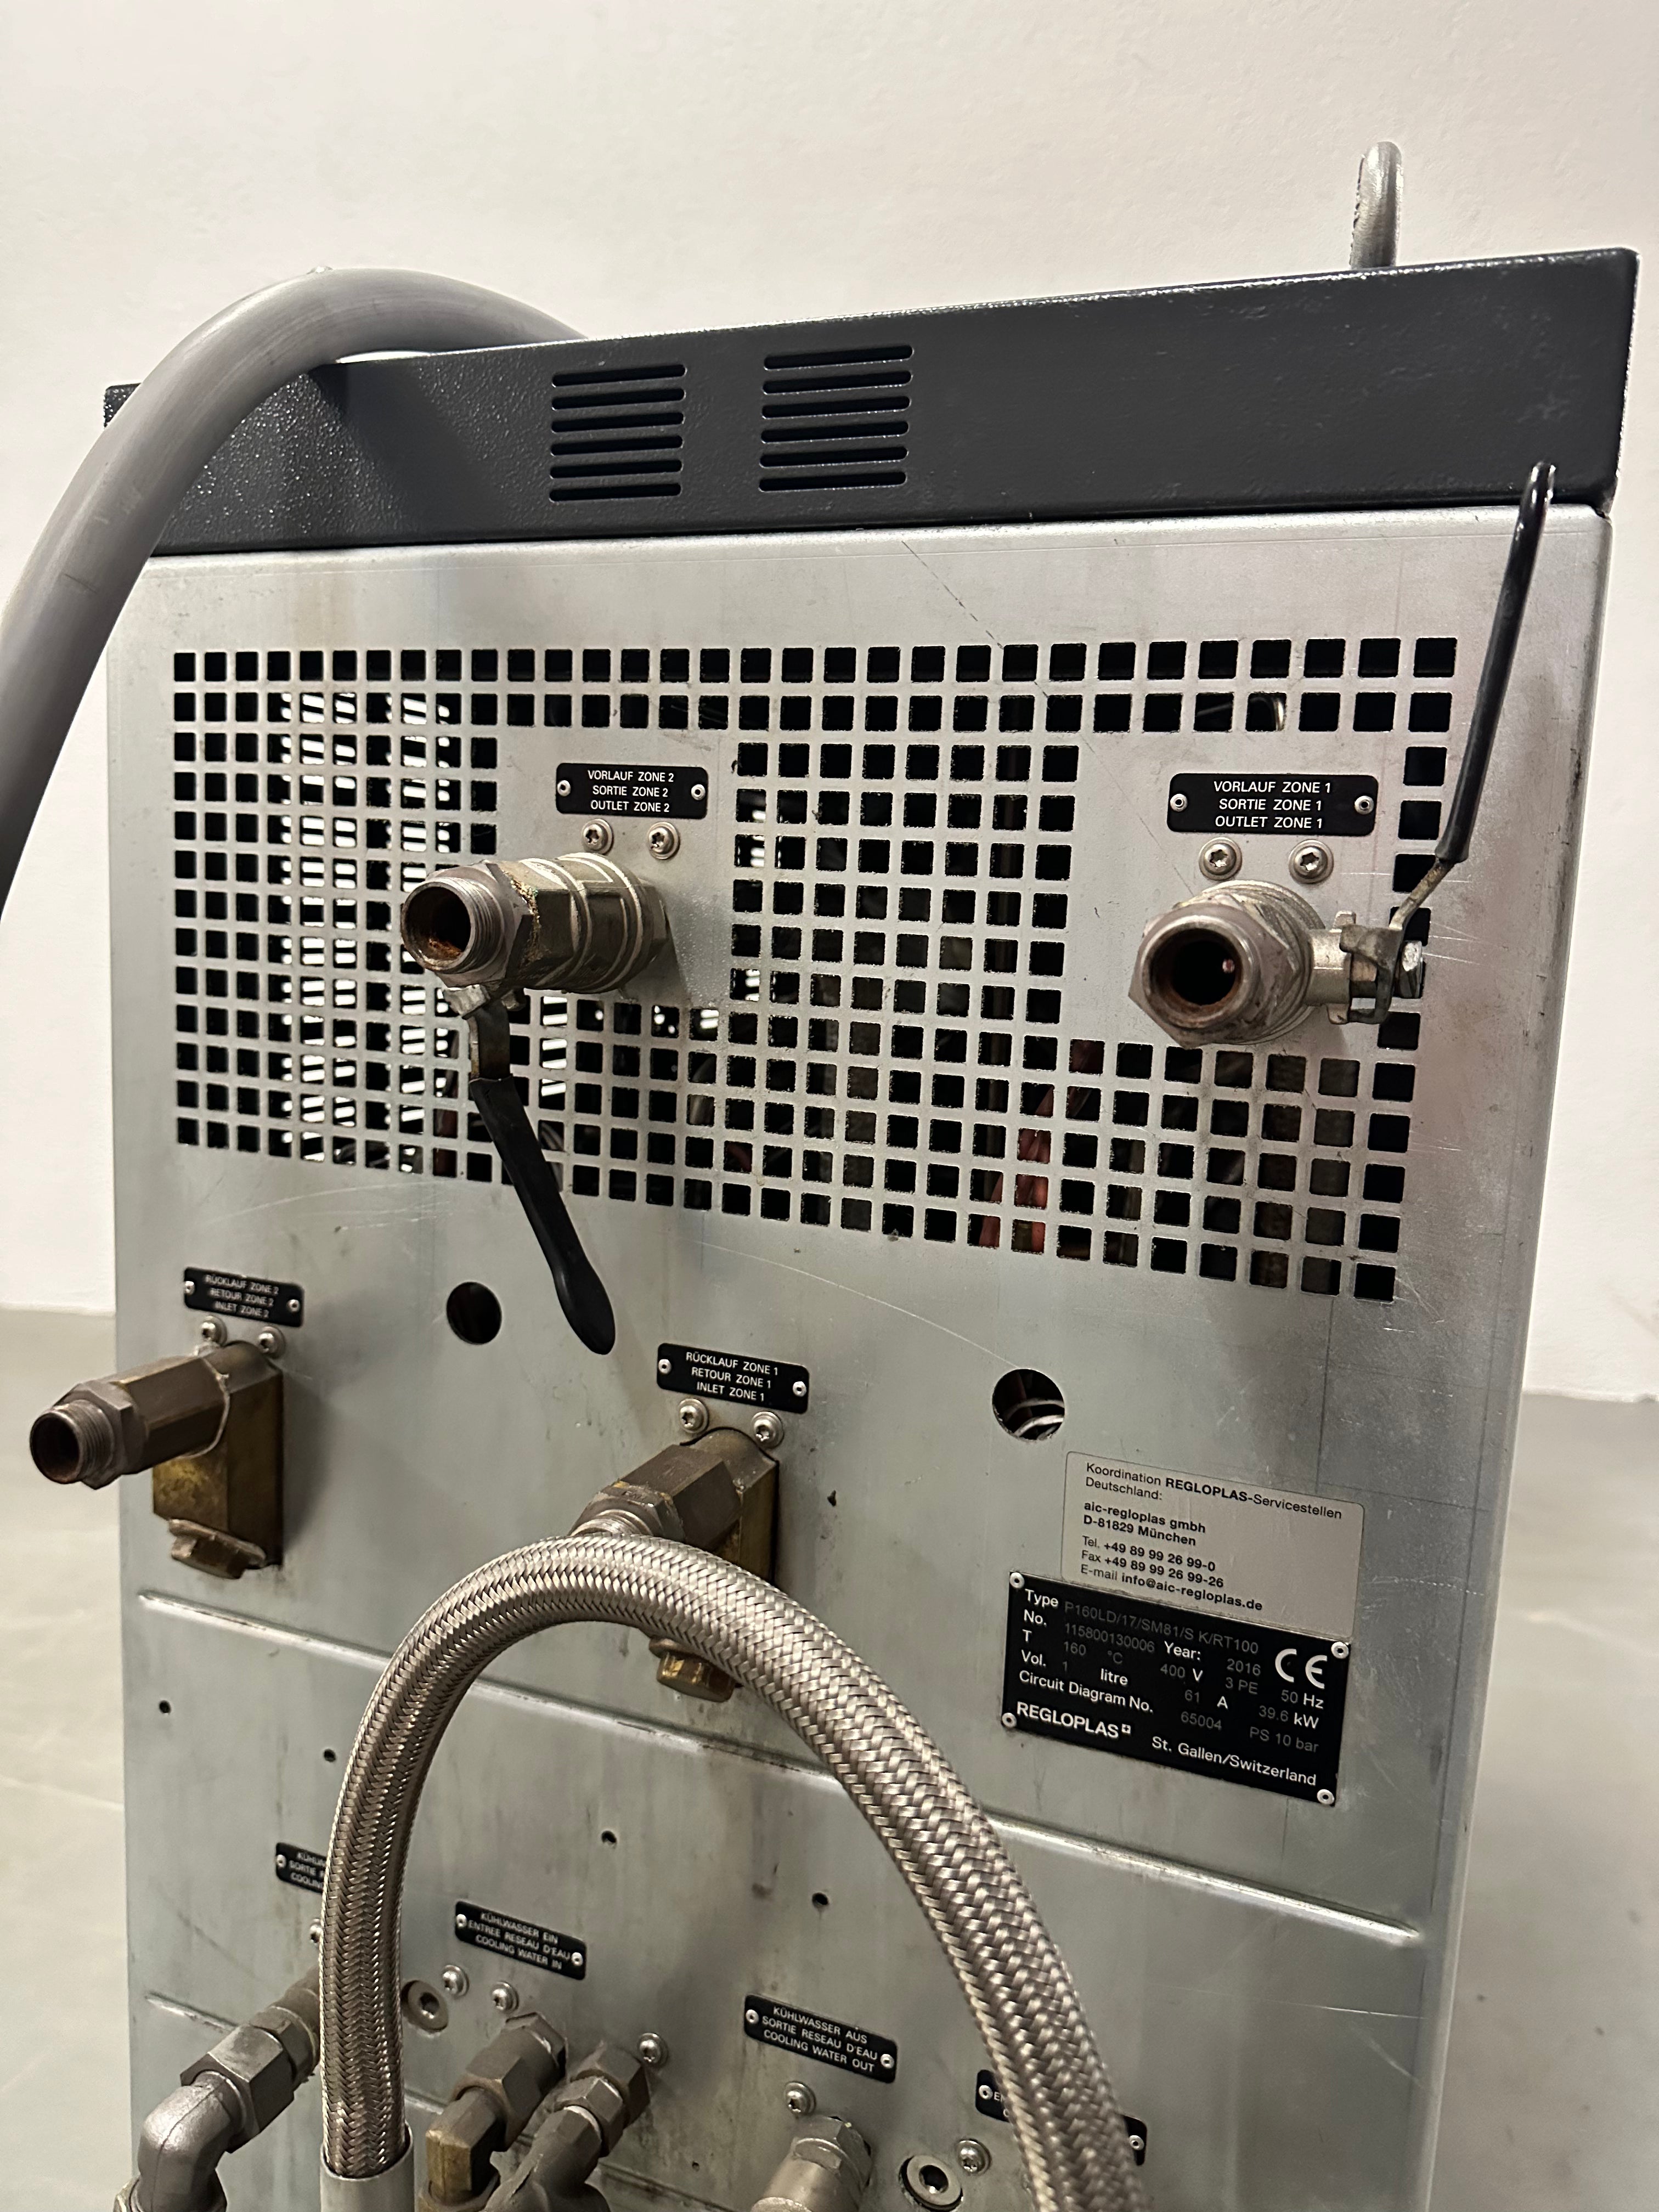 Regloplas termoregolatore pressione acqua P160LD/17/SM81/S K/RT100